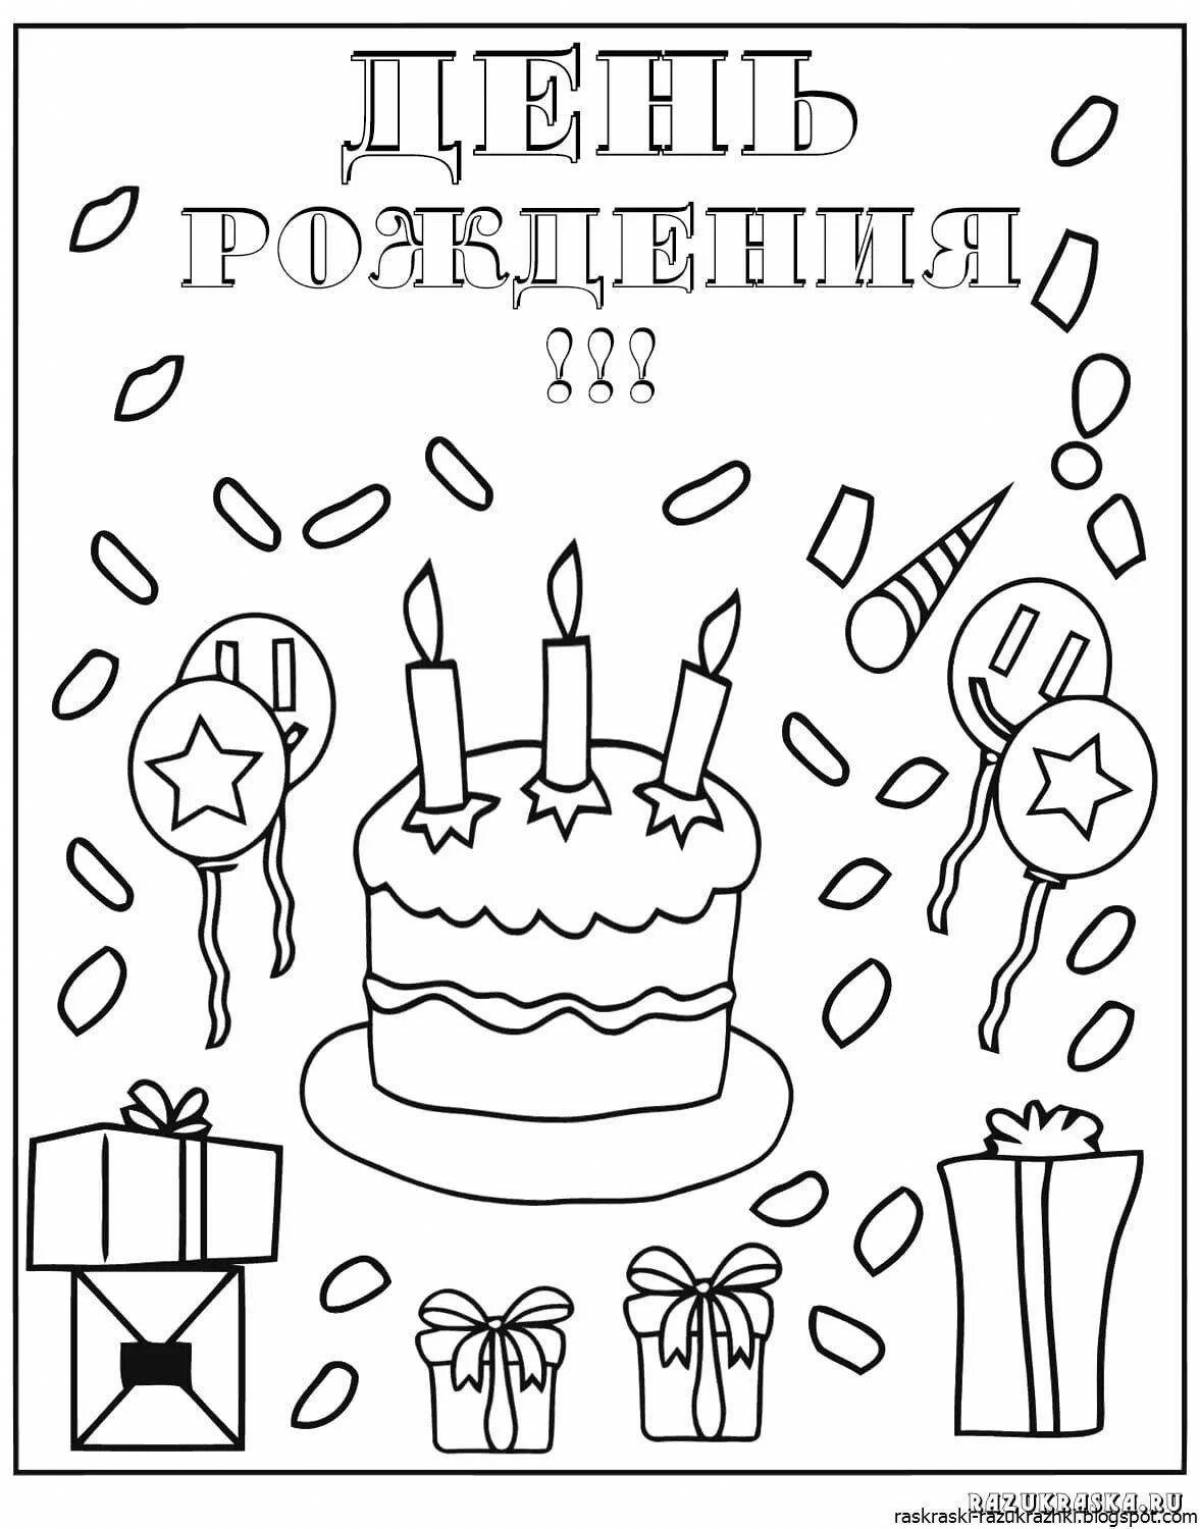 Радостная страница раскраски с днем ​​рождения дедушки от внучки